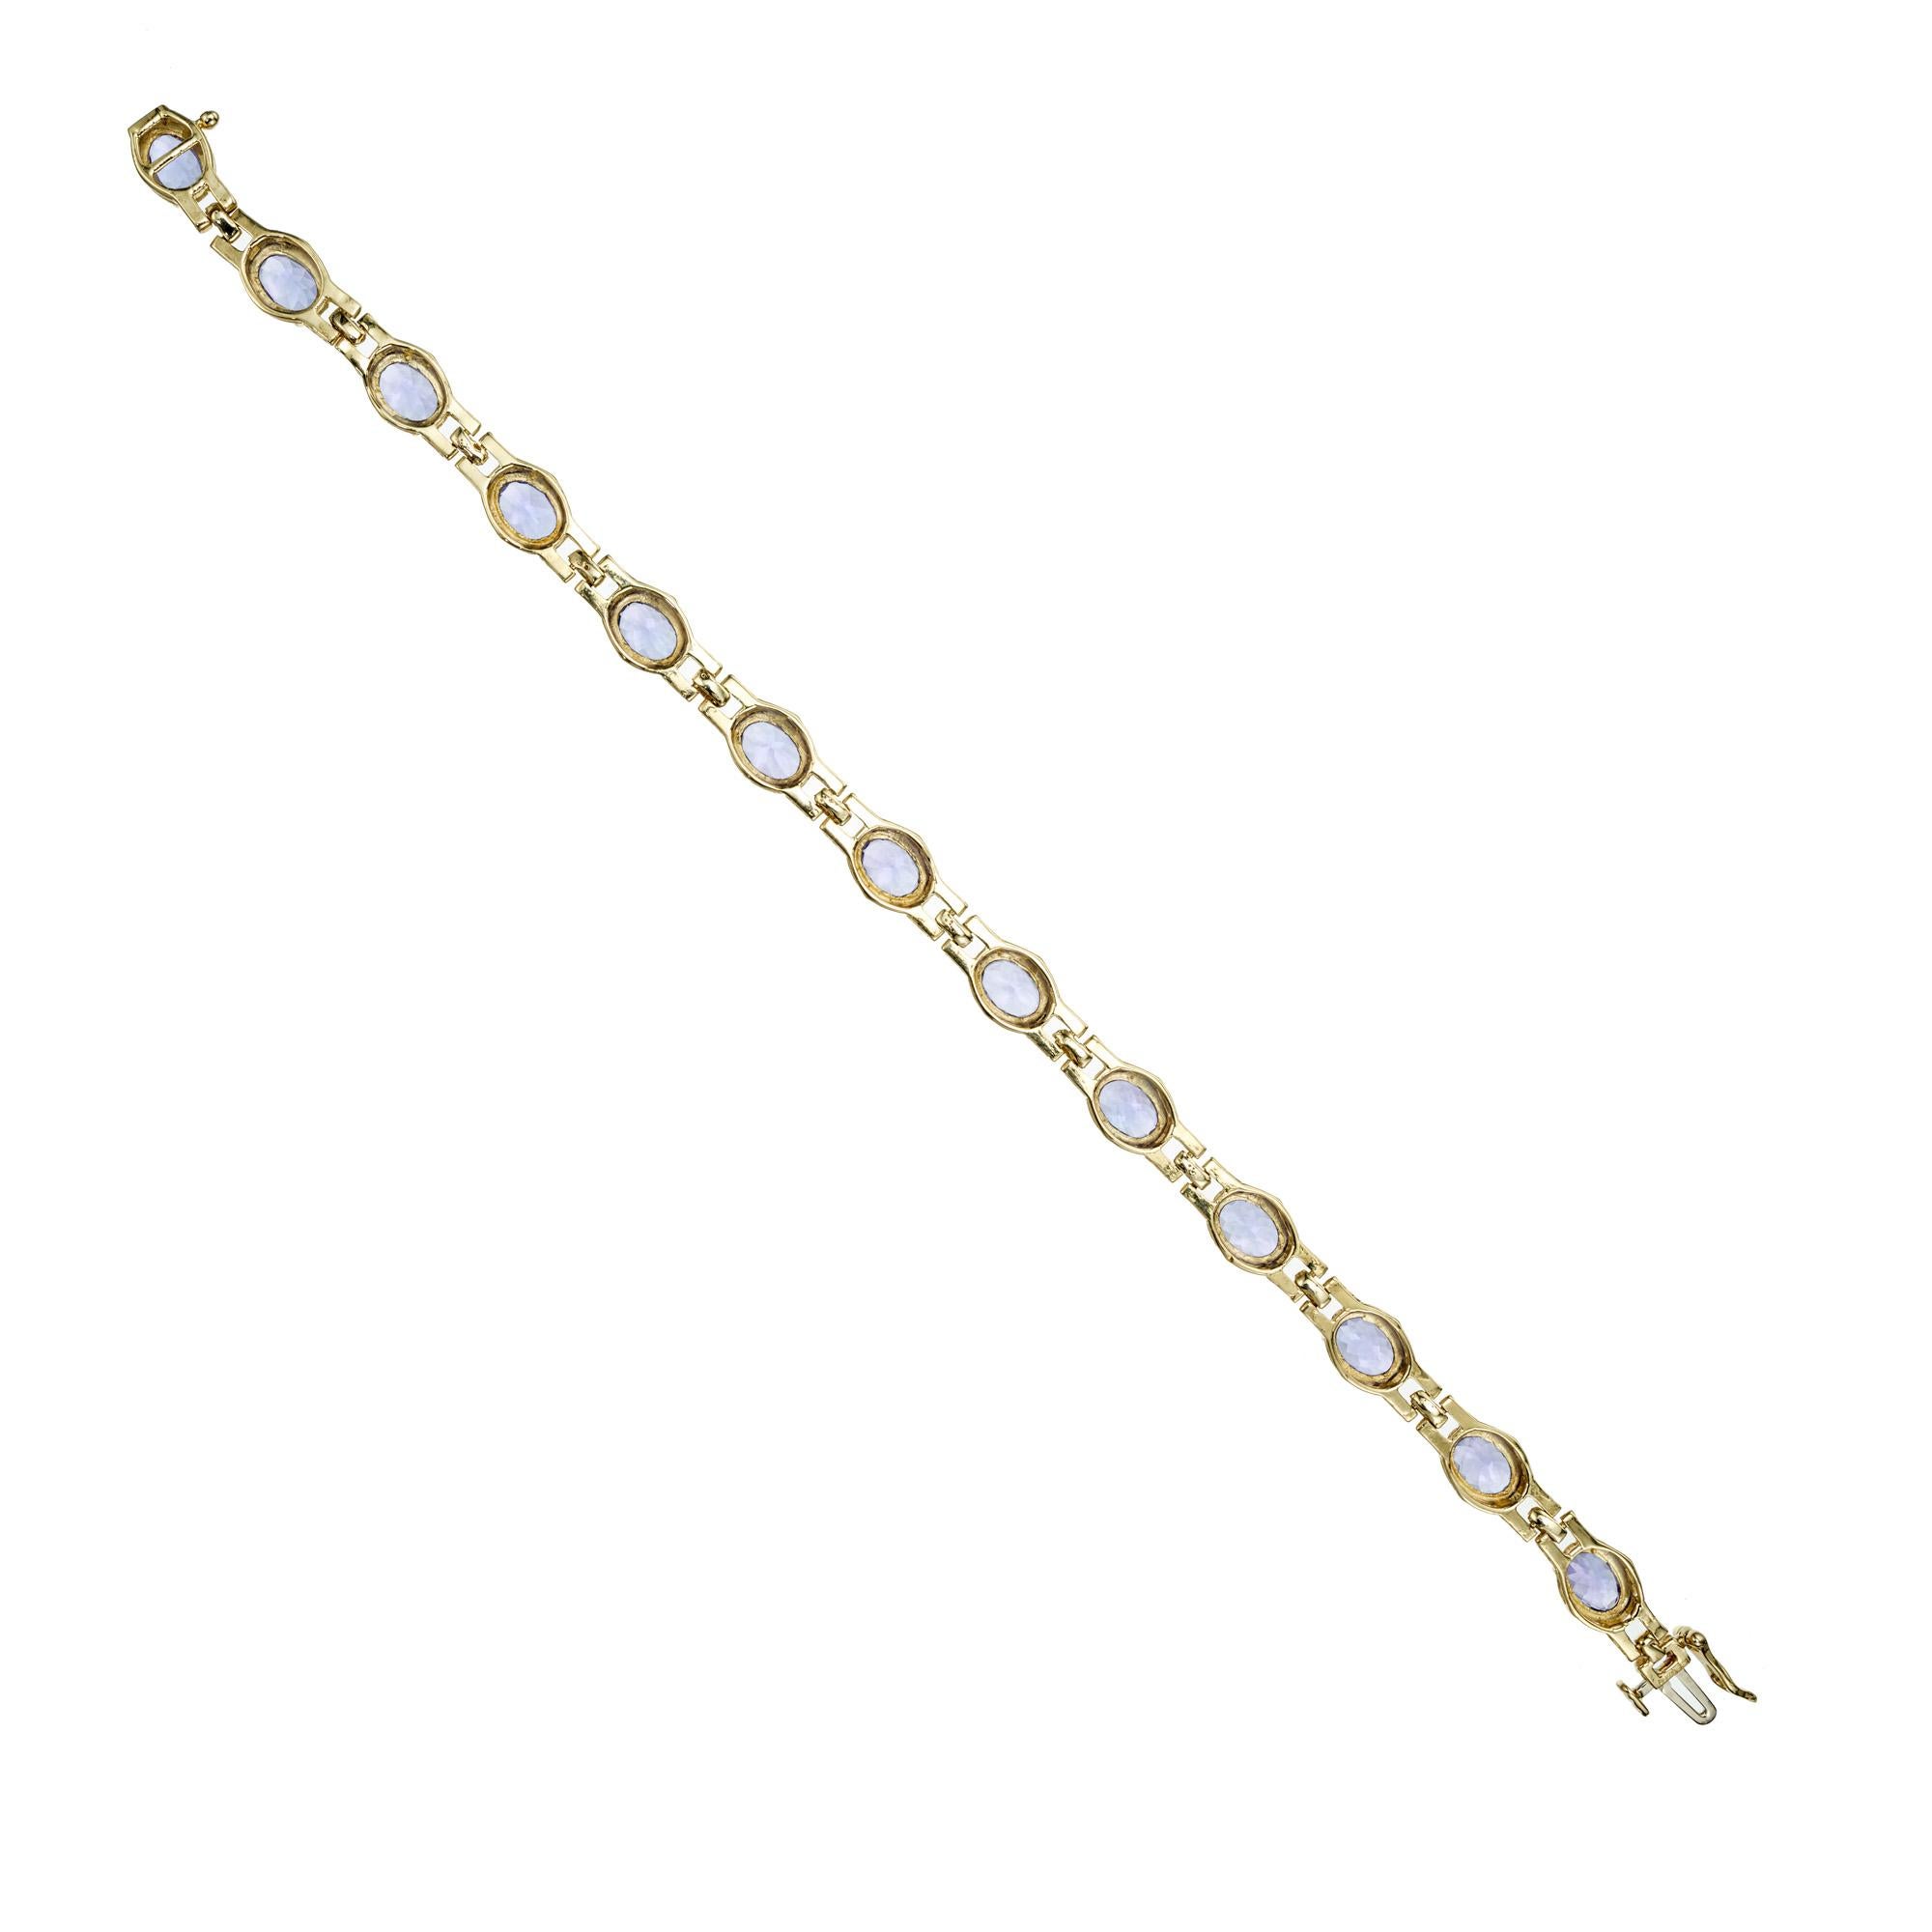 Bracelet Le Vian en tanzanite. 13 pierres précieuses ovales en tanzanite bleue, serties dans un bracelet à maillons en or jaune 14k, avec un maillon panthère à 3 rangs entre les pierres. 8 pouces de long. 
Le Vian est connu pour son LOVE qui